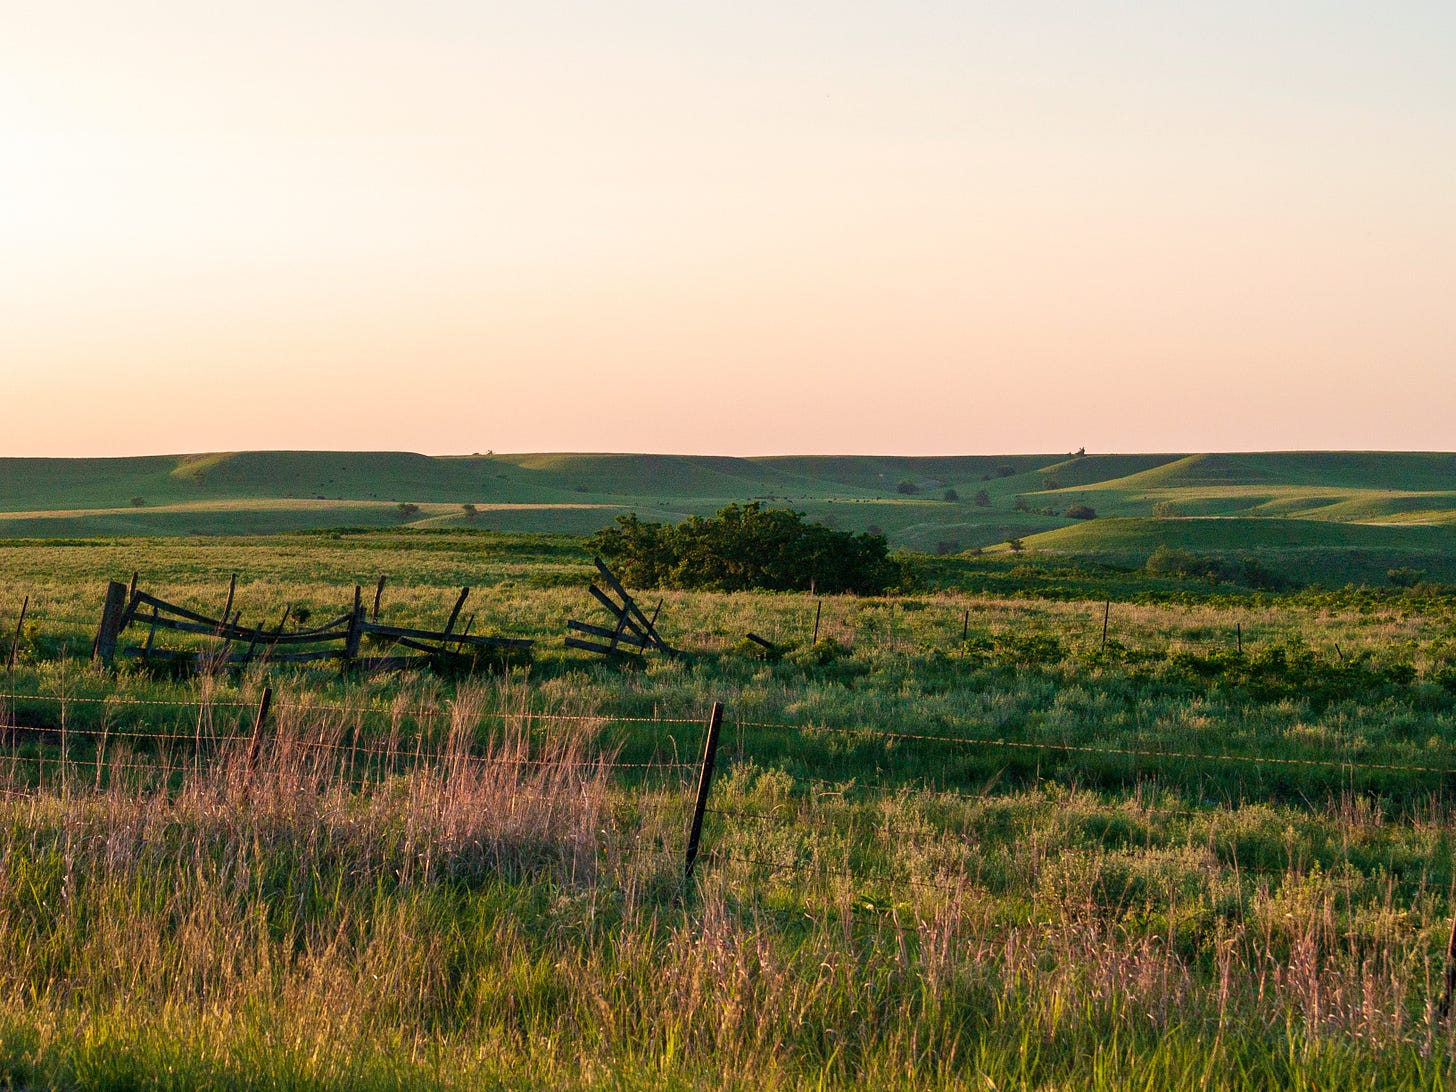 Kansas Prairie grasslands